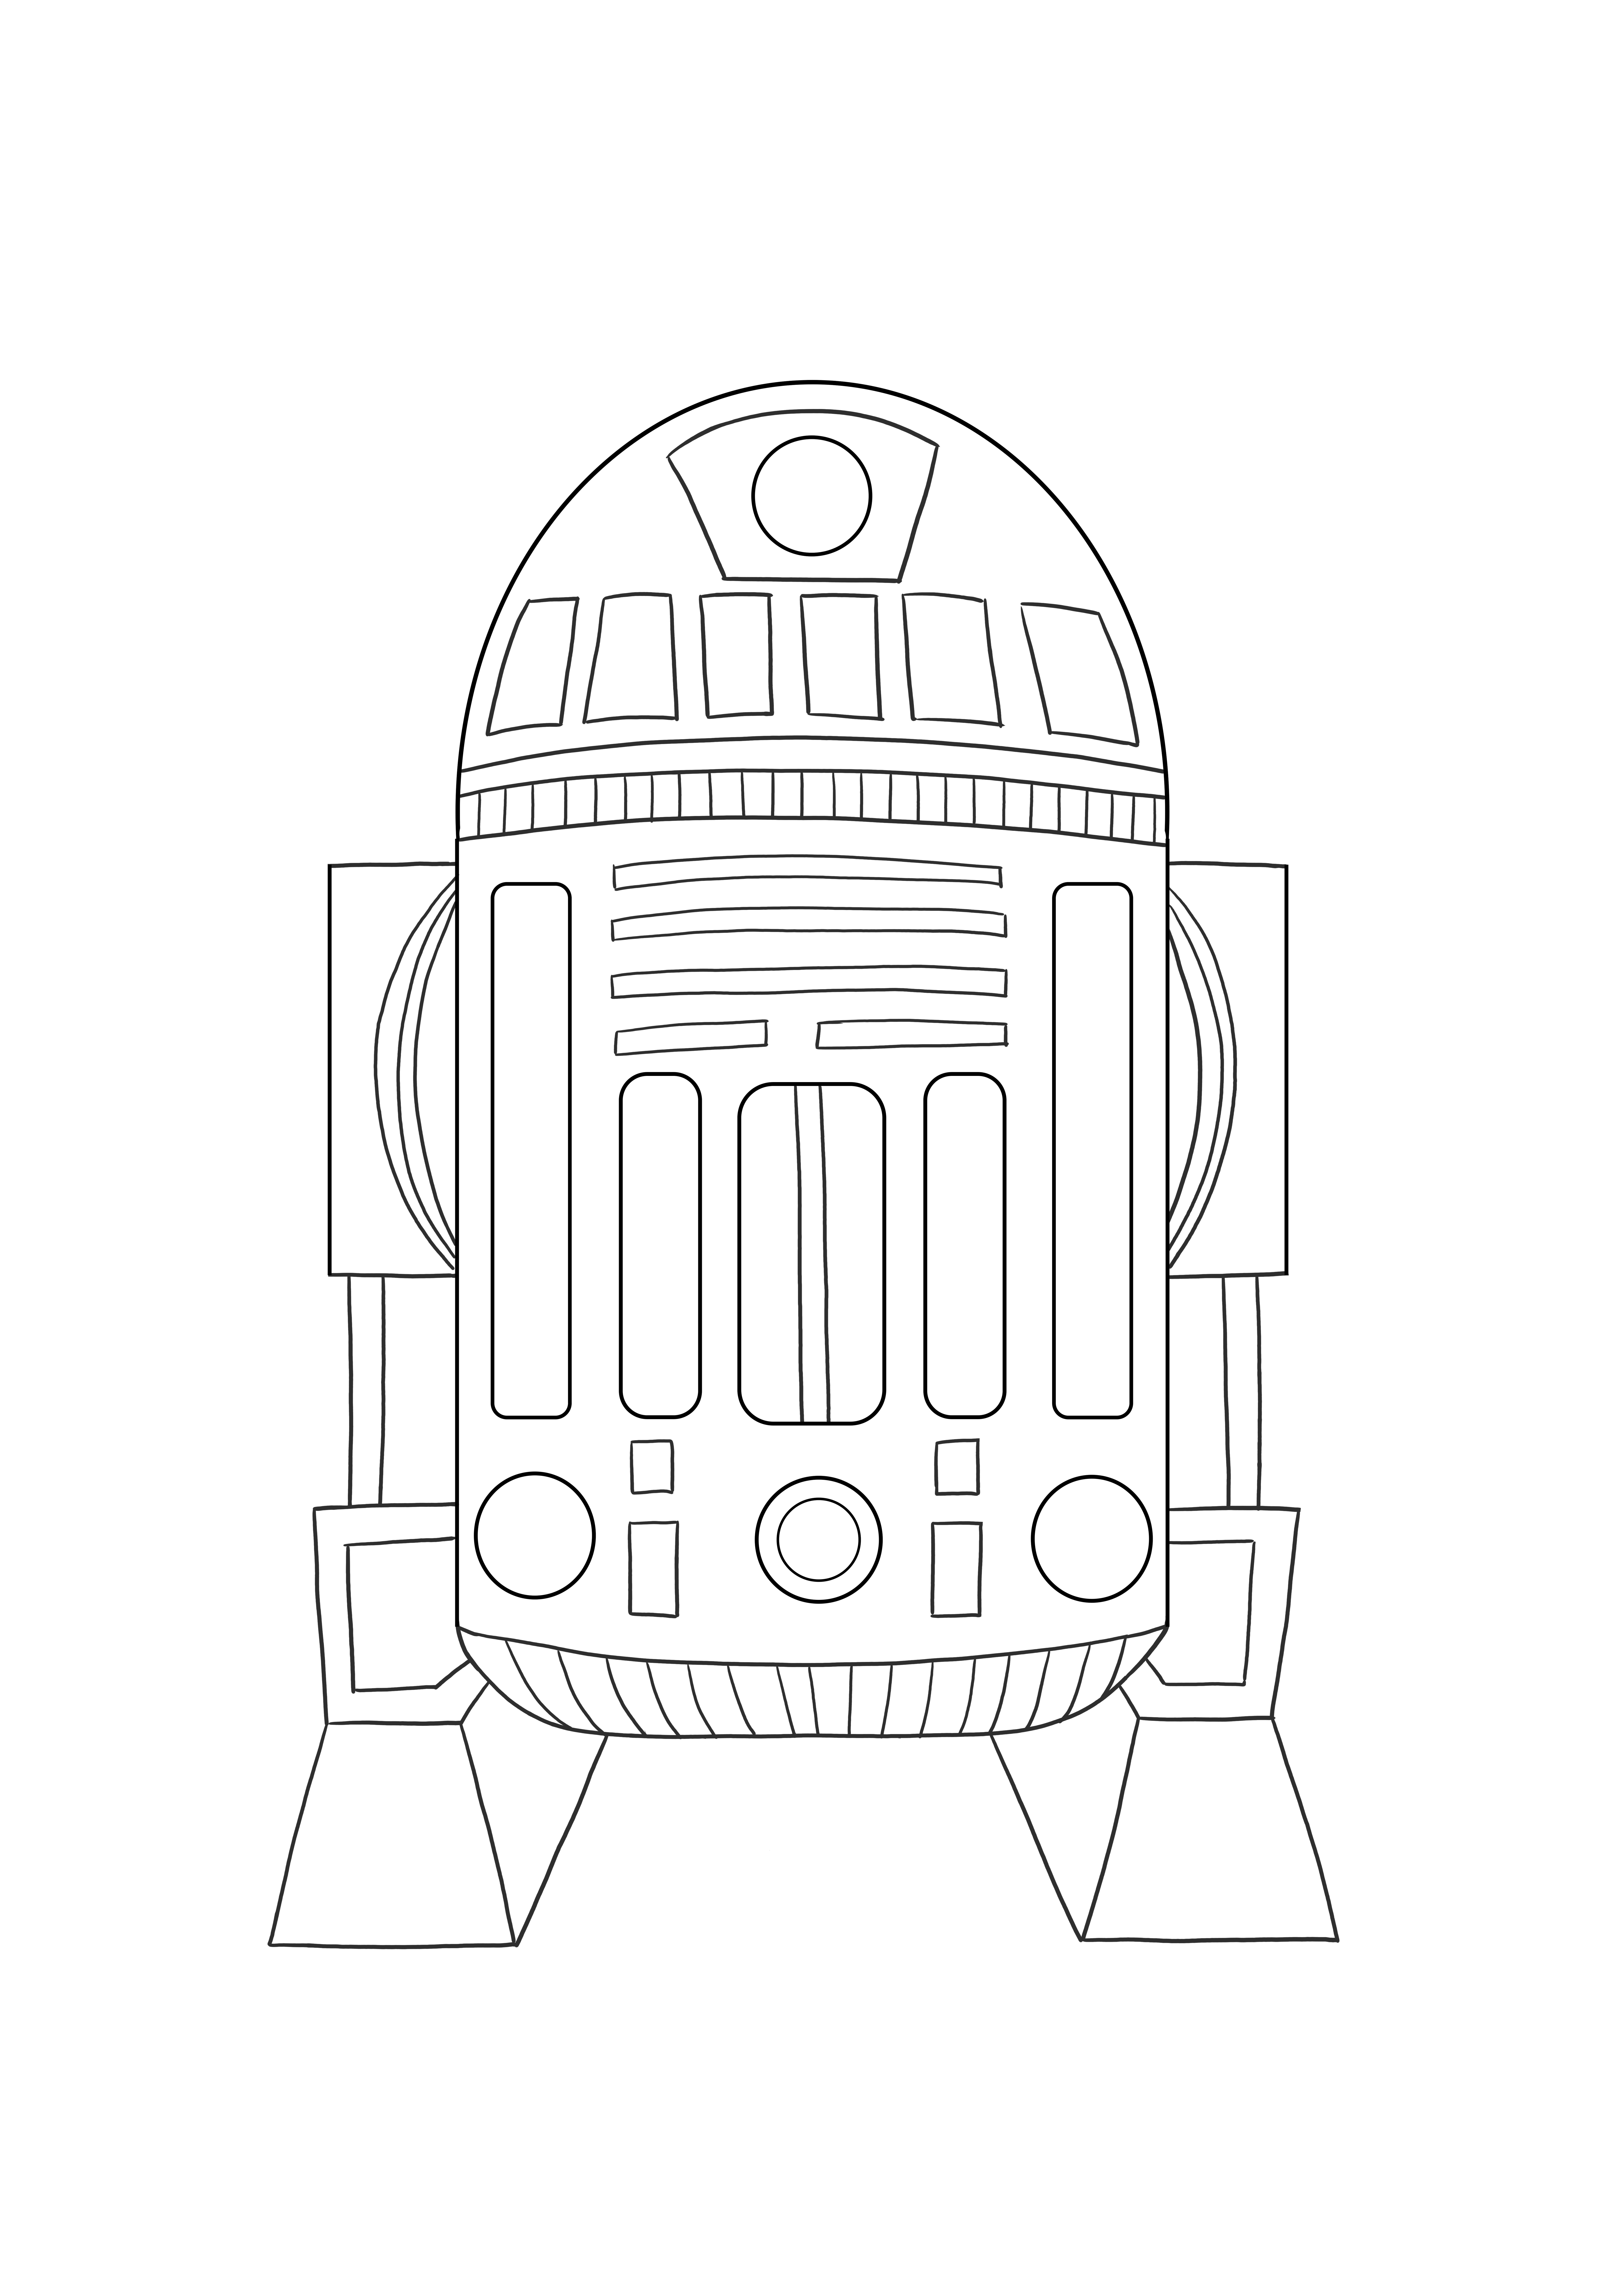 Çocuklar için renklendirmek için Astromed droid R2 ücretsiz yazdırılabilir resim